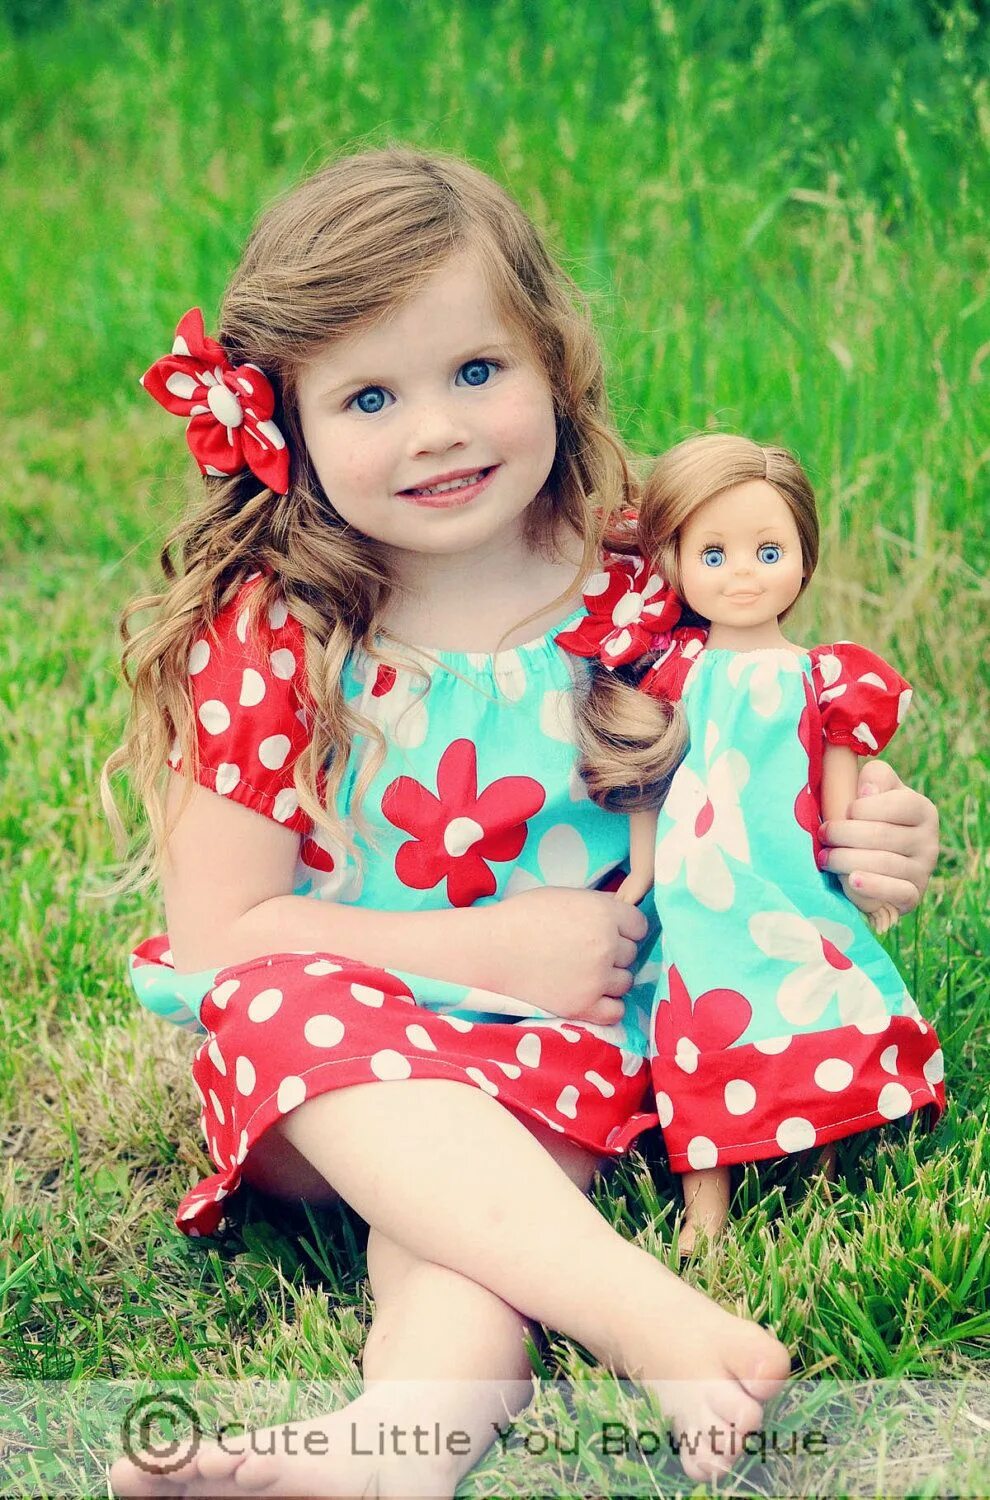 Куклы для девочек. Кукла дочка. Одинаковая для куклы и девочки. Дети играют в куклы. Dolls baby girls